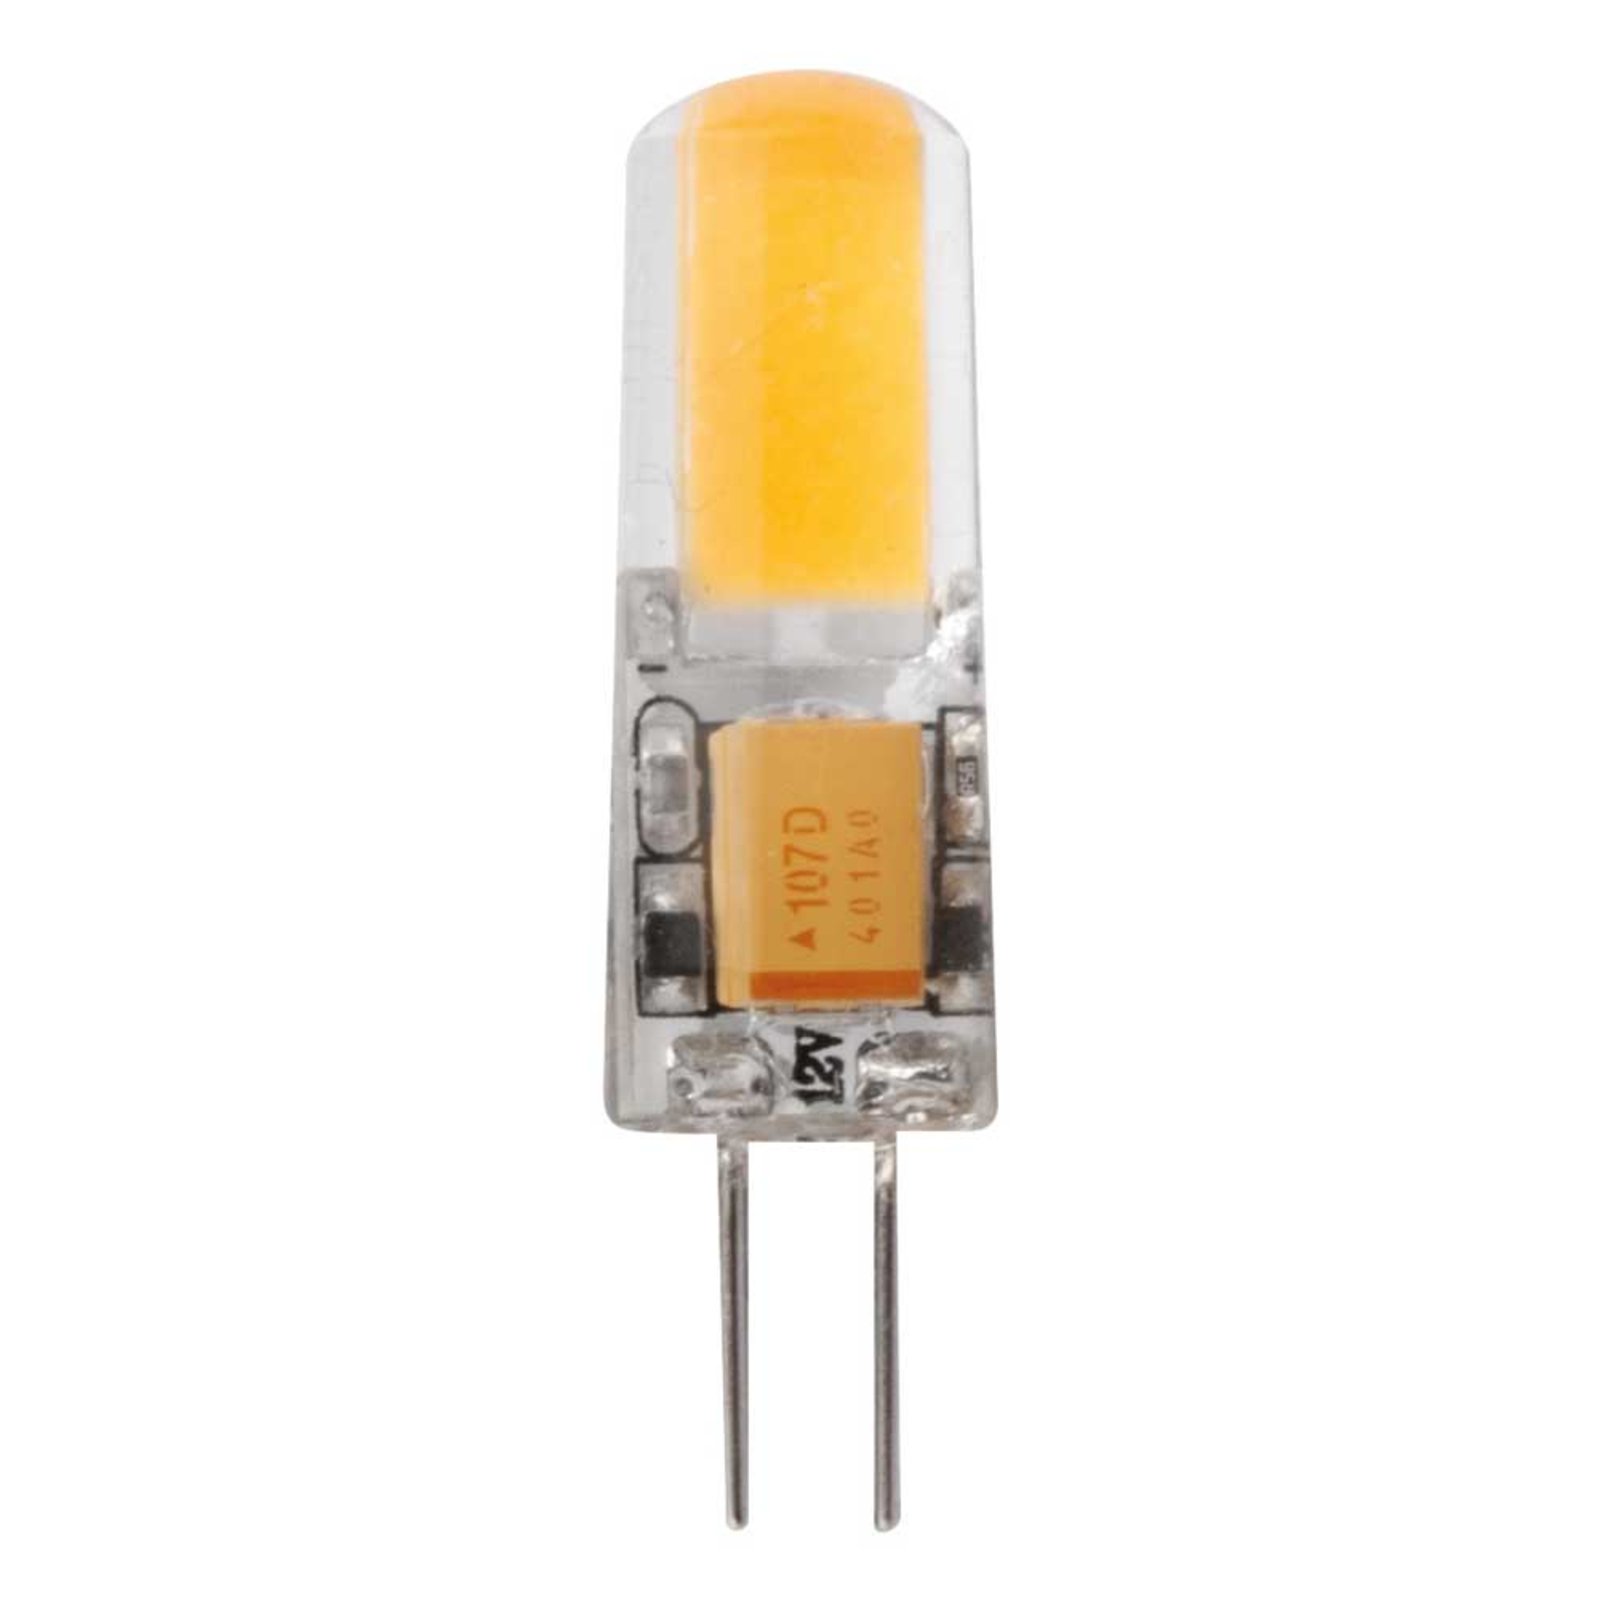 LED-stiftlampa G4 1,8W varmvit